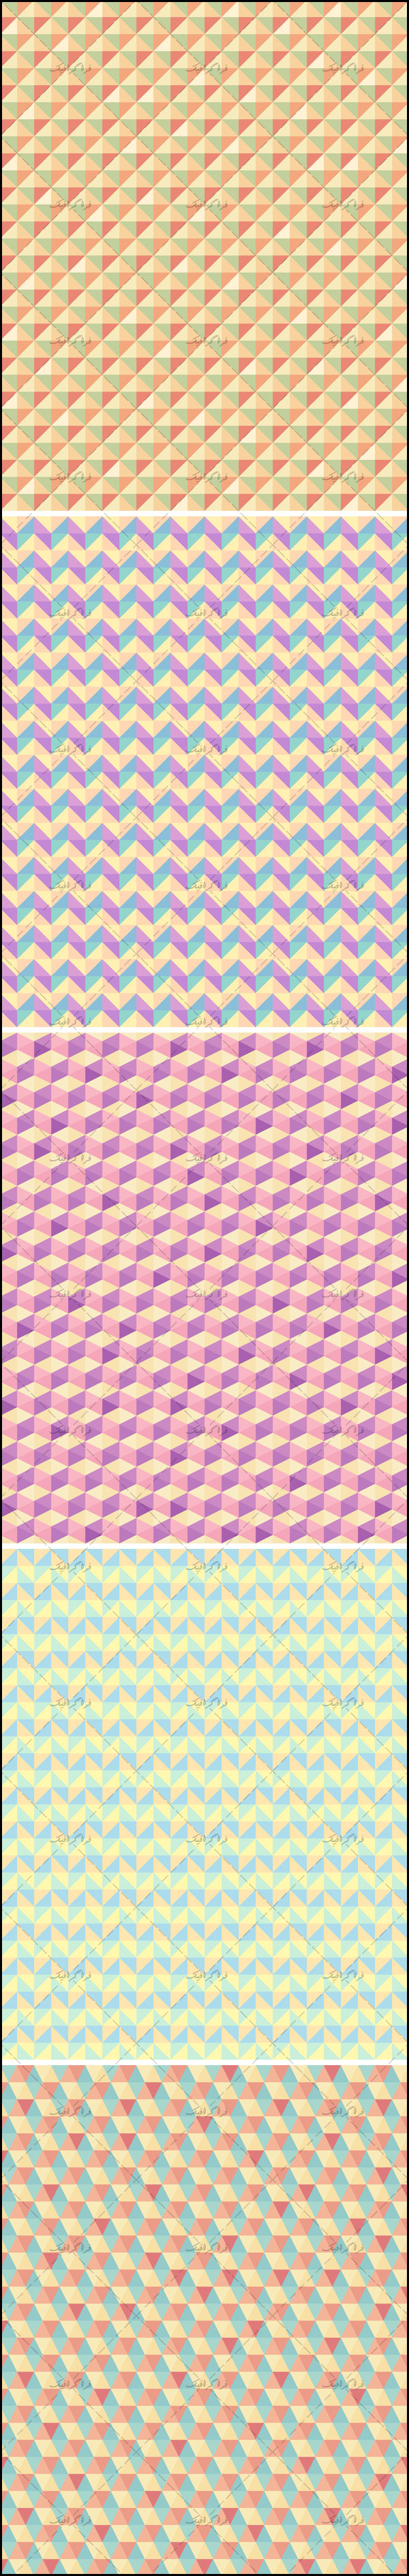 دانلود پترن فتوشاپ شکل های چند ضلعی